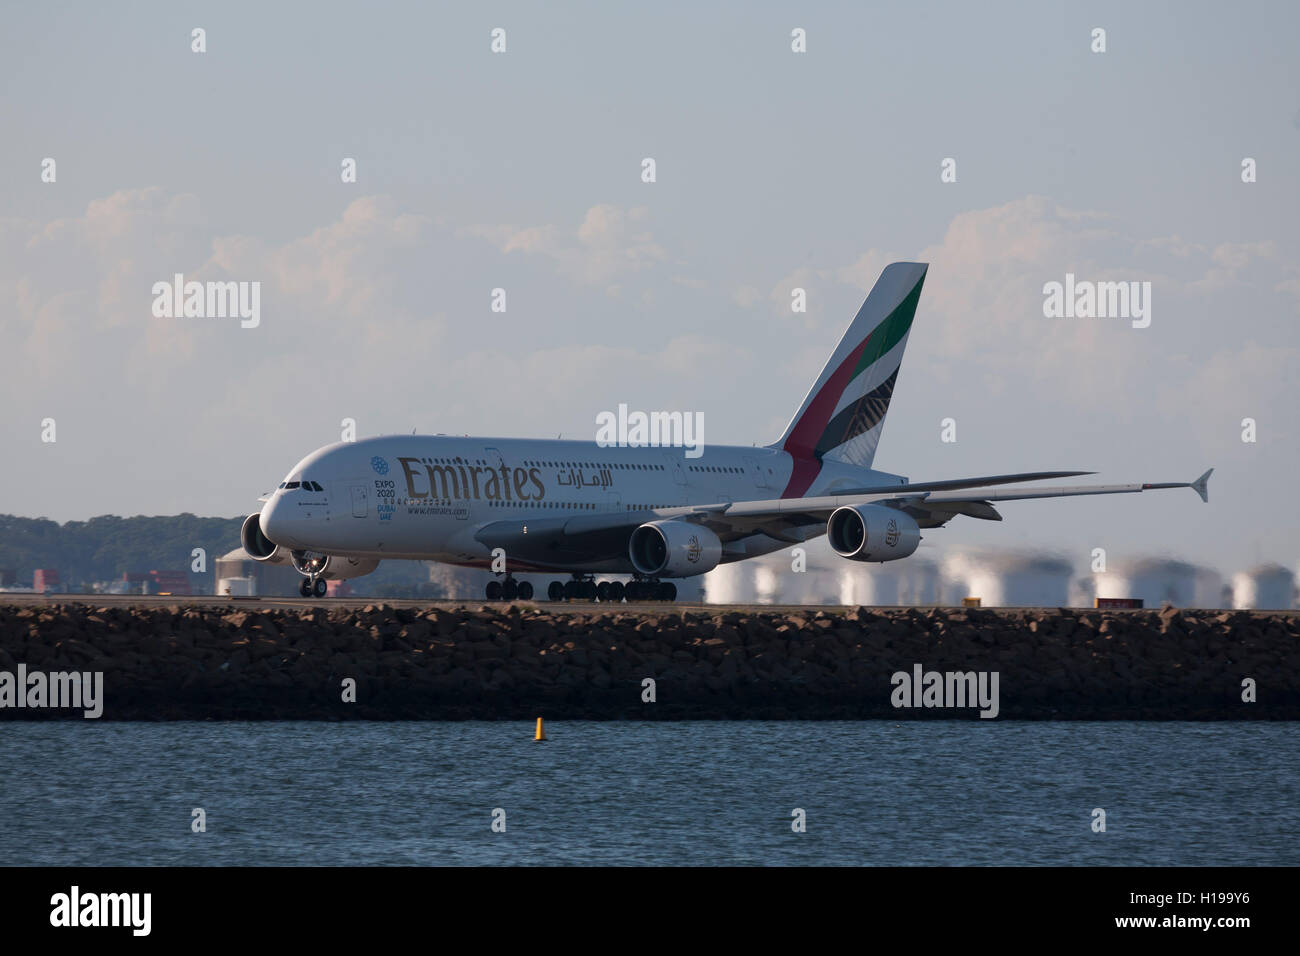 A380 Emirates Airlines au départ de l'Aéroport International de Kingsford Smith Mascot Sydney Australie Banque D'Images